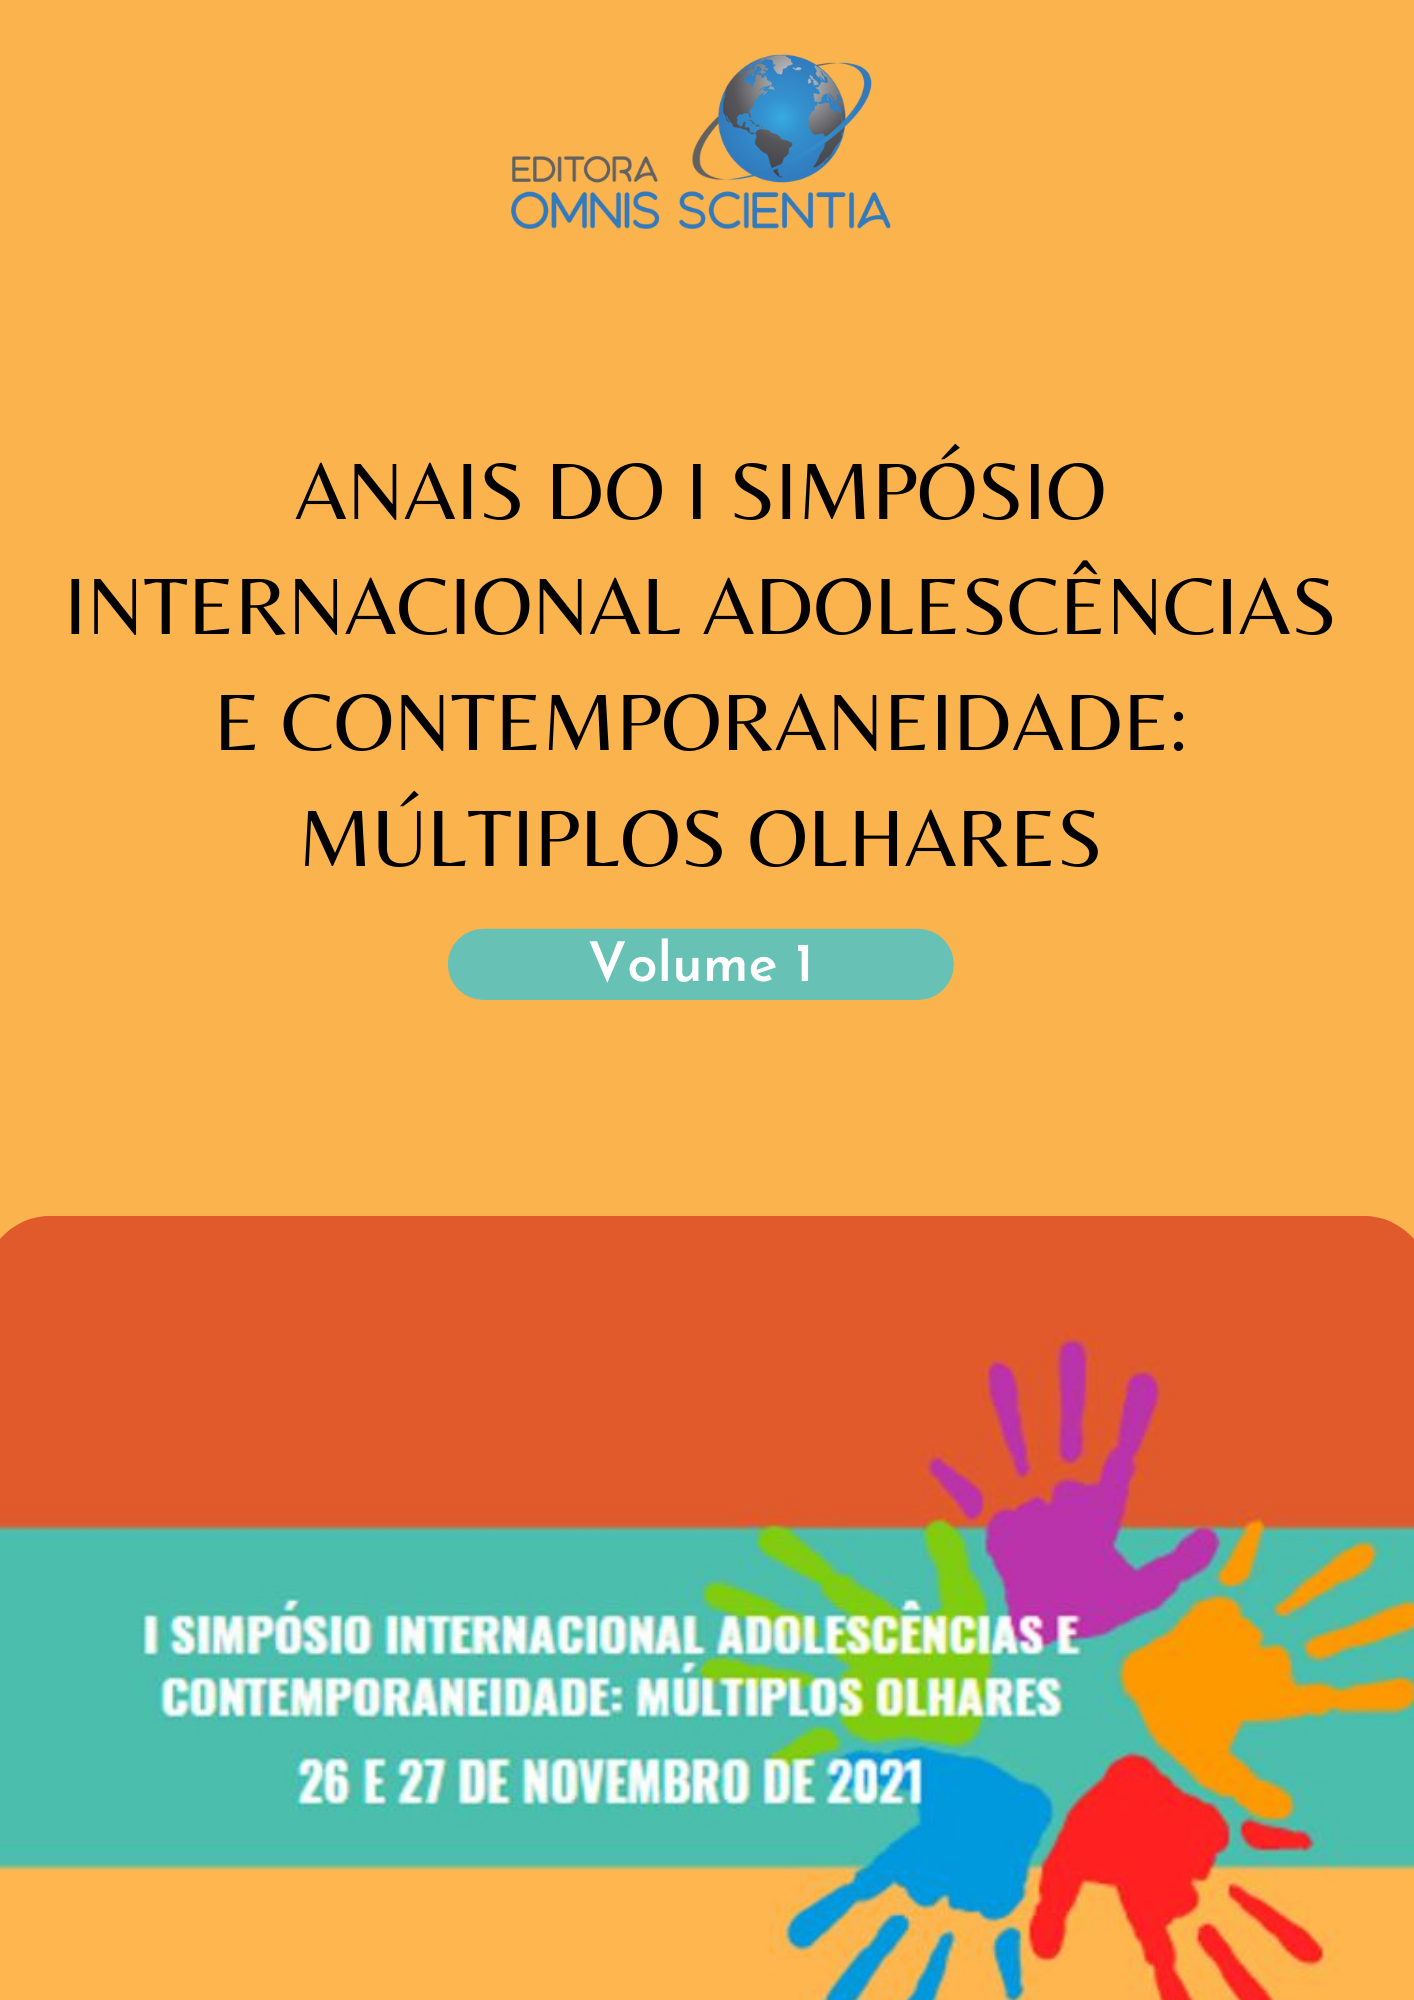 ANAIS DO I SIMPÓSIO INTERNACIONAL ADOLESCÊNCIAS E CONTEMPORANEIADE: MÚLTIPLOS OLHARES